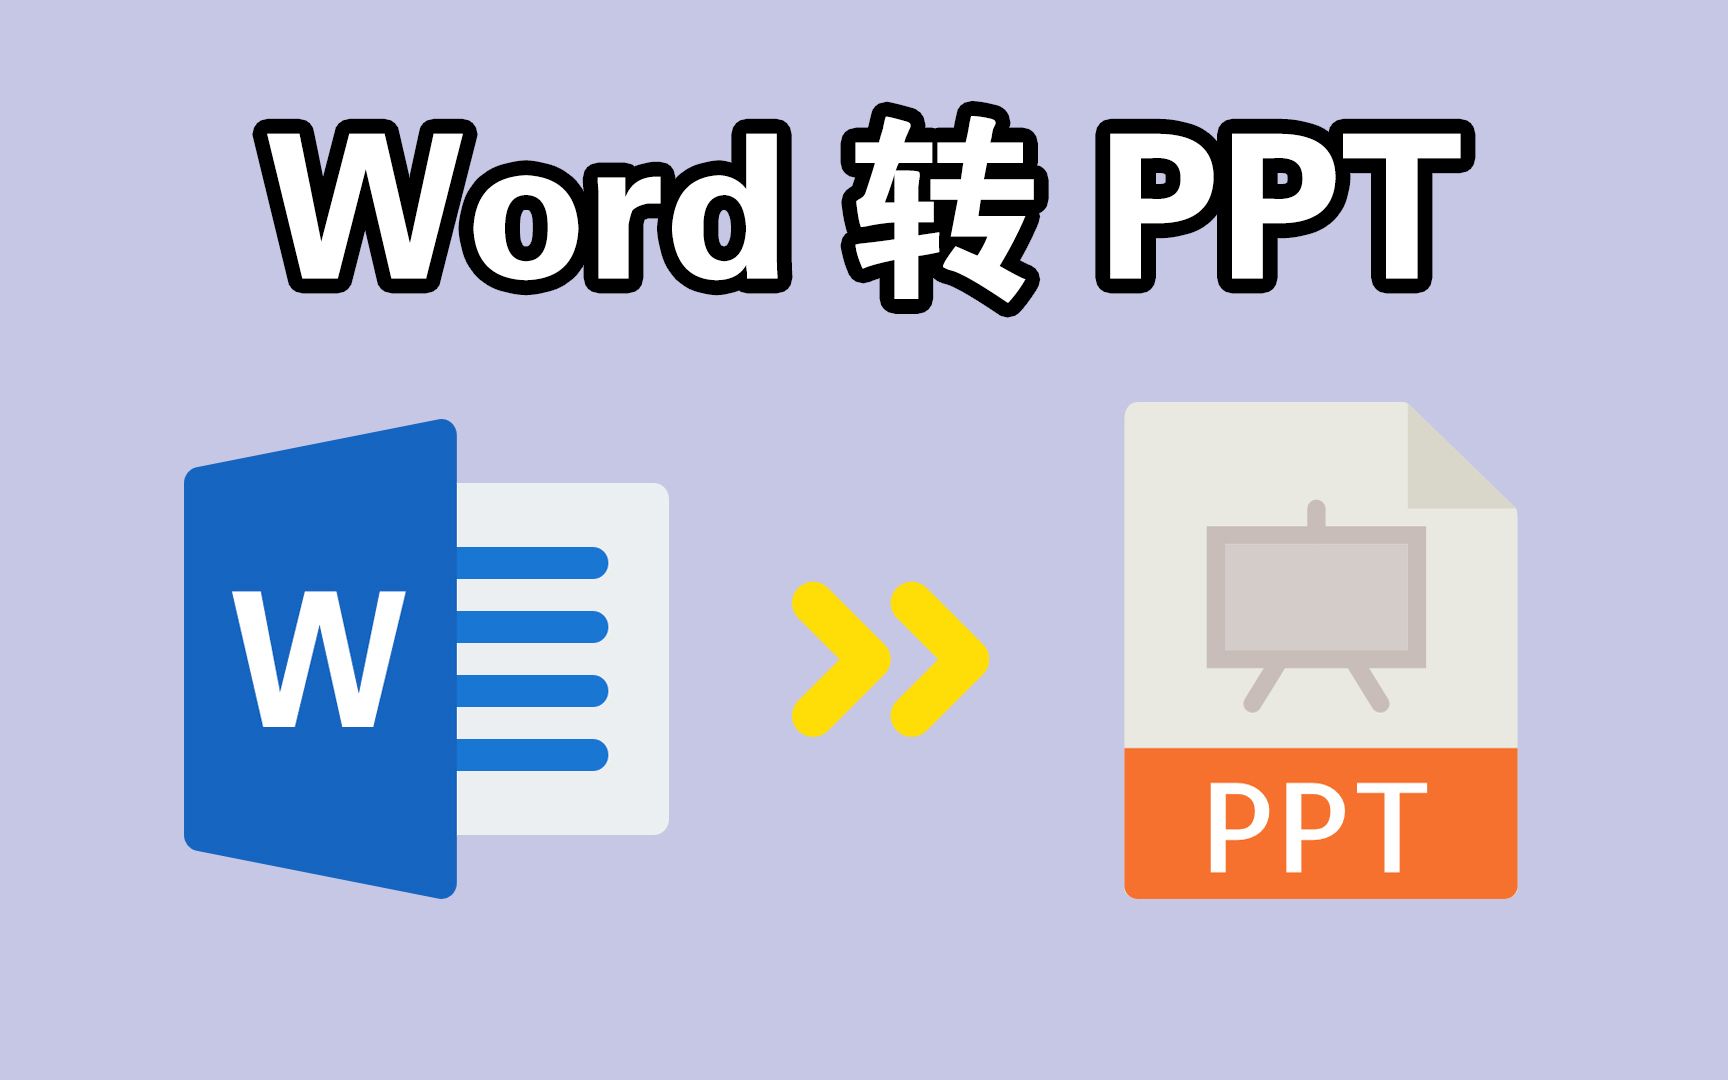 PDF格式怎么转成PPT？最简单的PDF转PPT方法在这_嗨格式官网